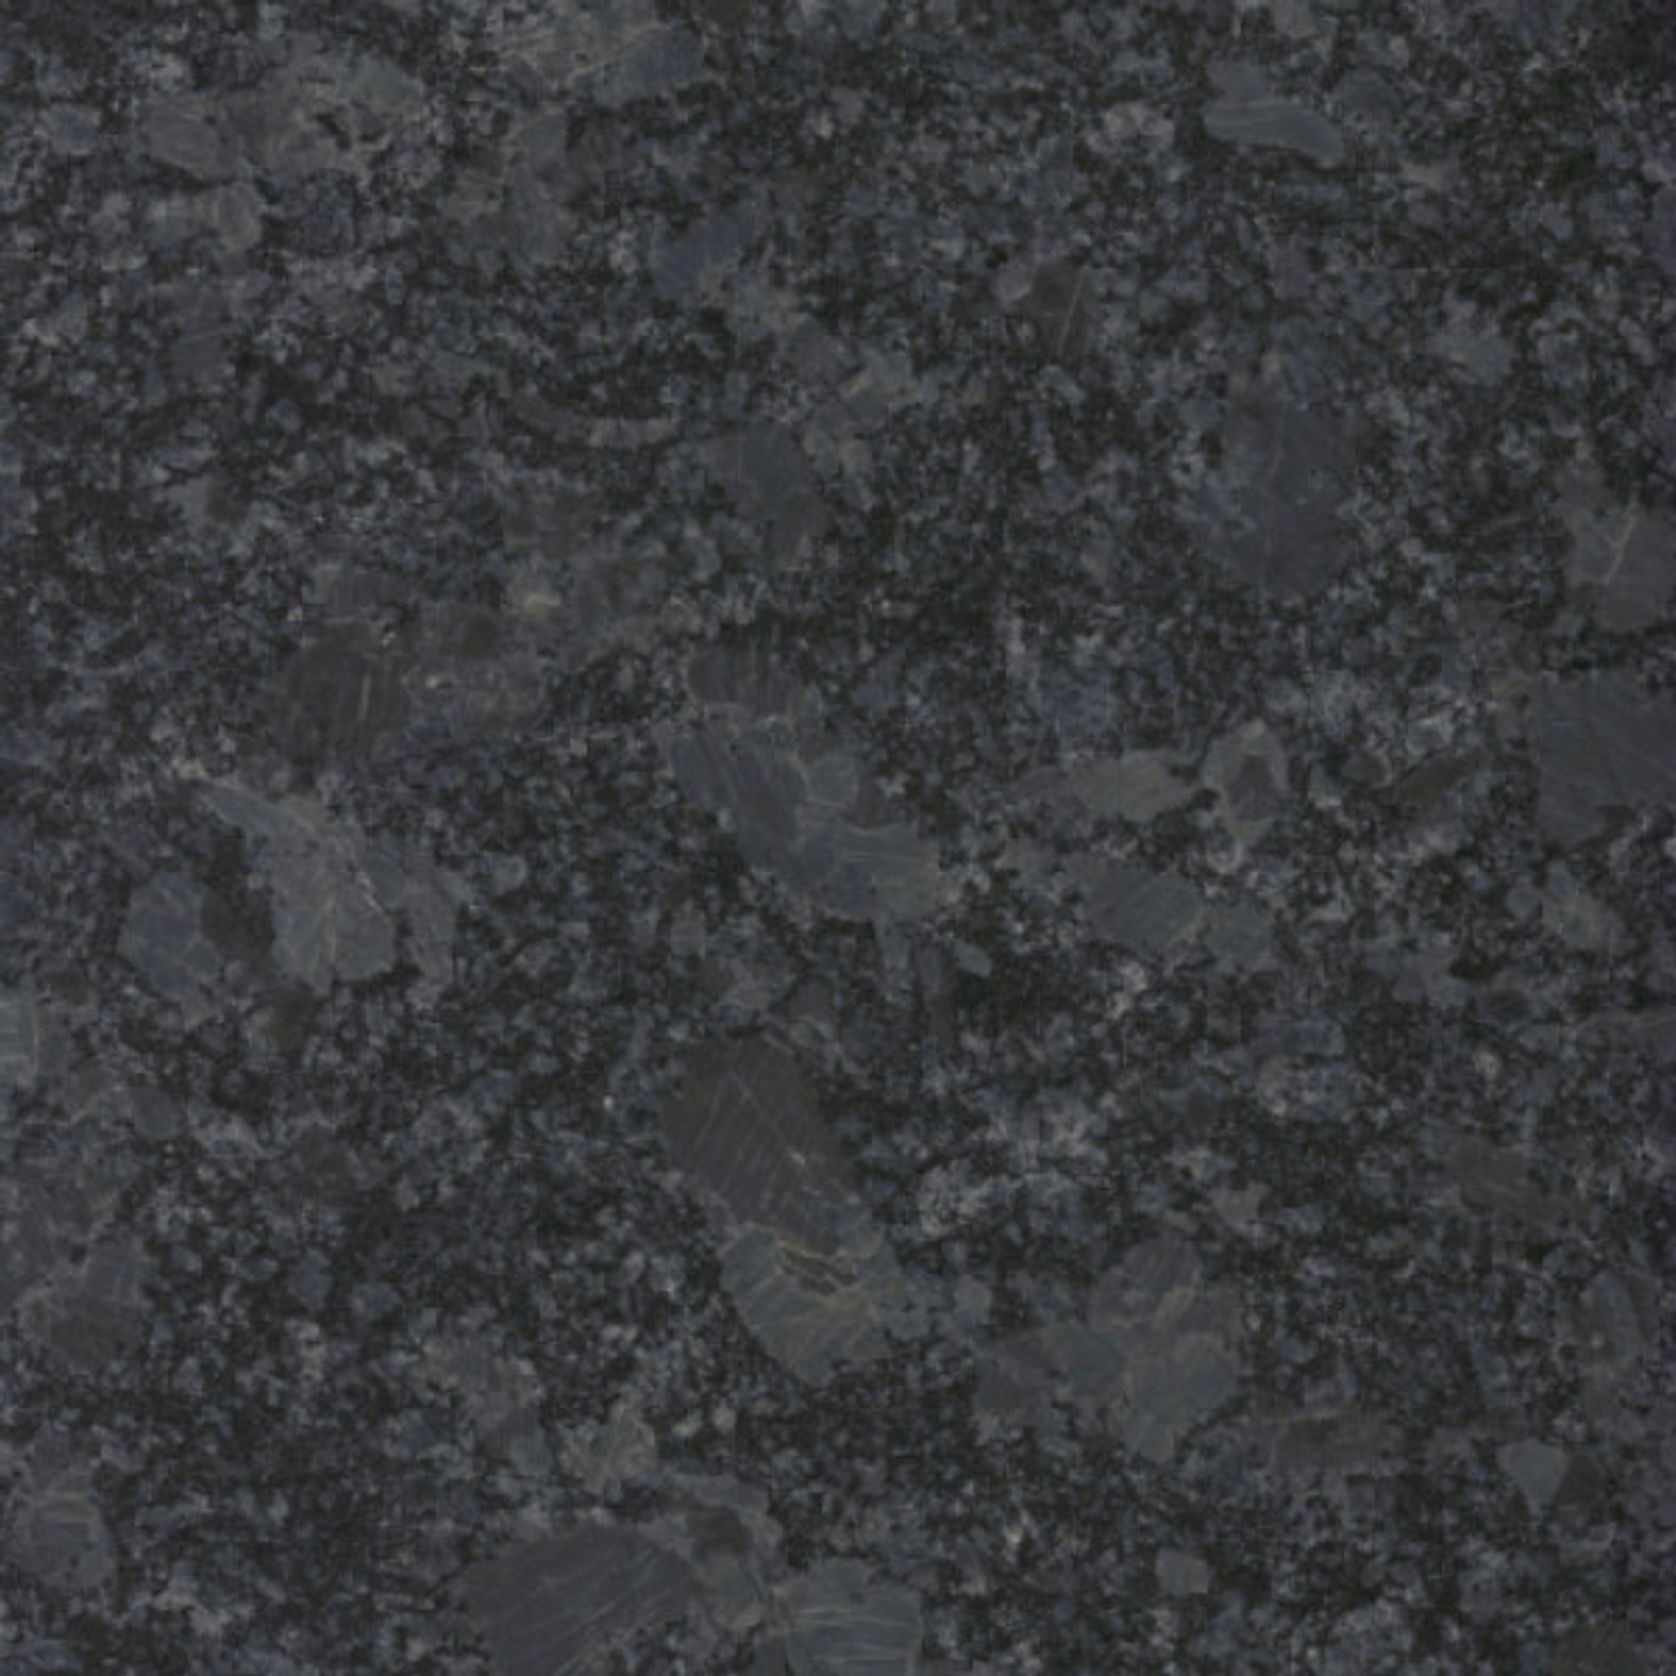 Steel Grey Granite gallery detail image